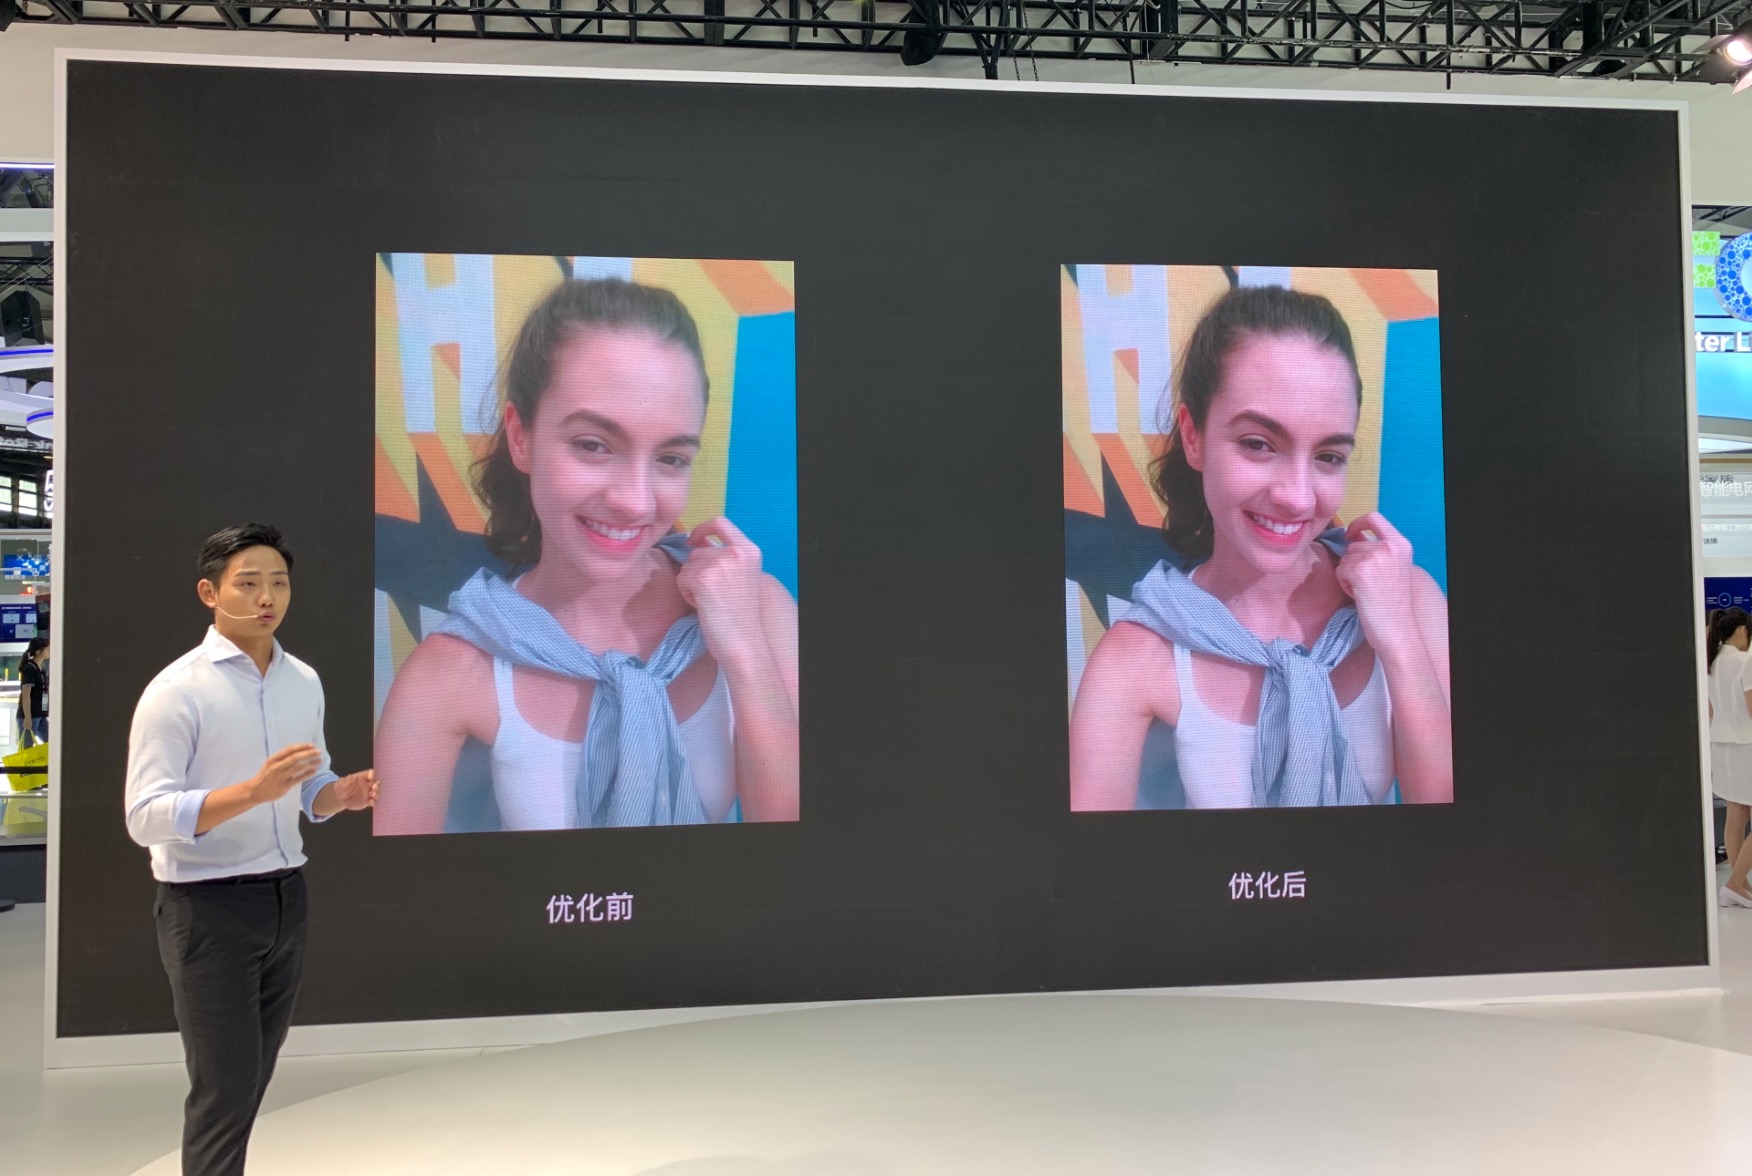 OPPO chính thức trình
làng smartphone sử dụng công nghệ camera selfie ẩn hiện dưới
màn hình